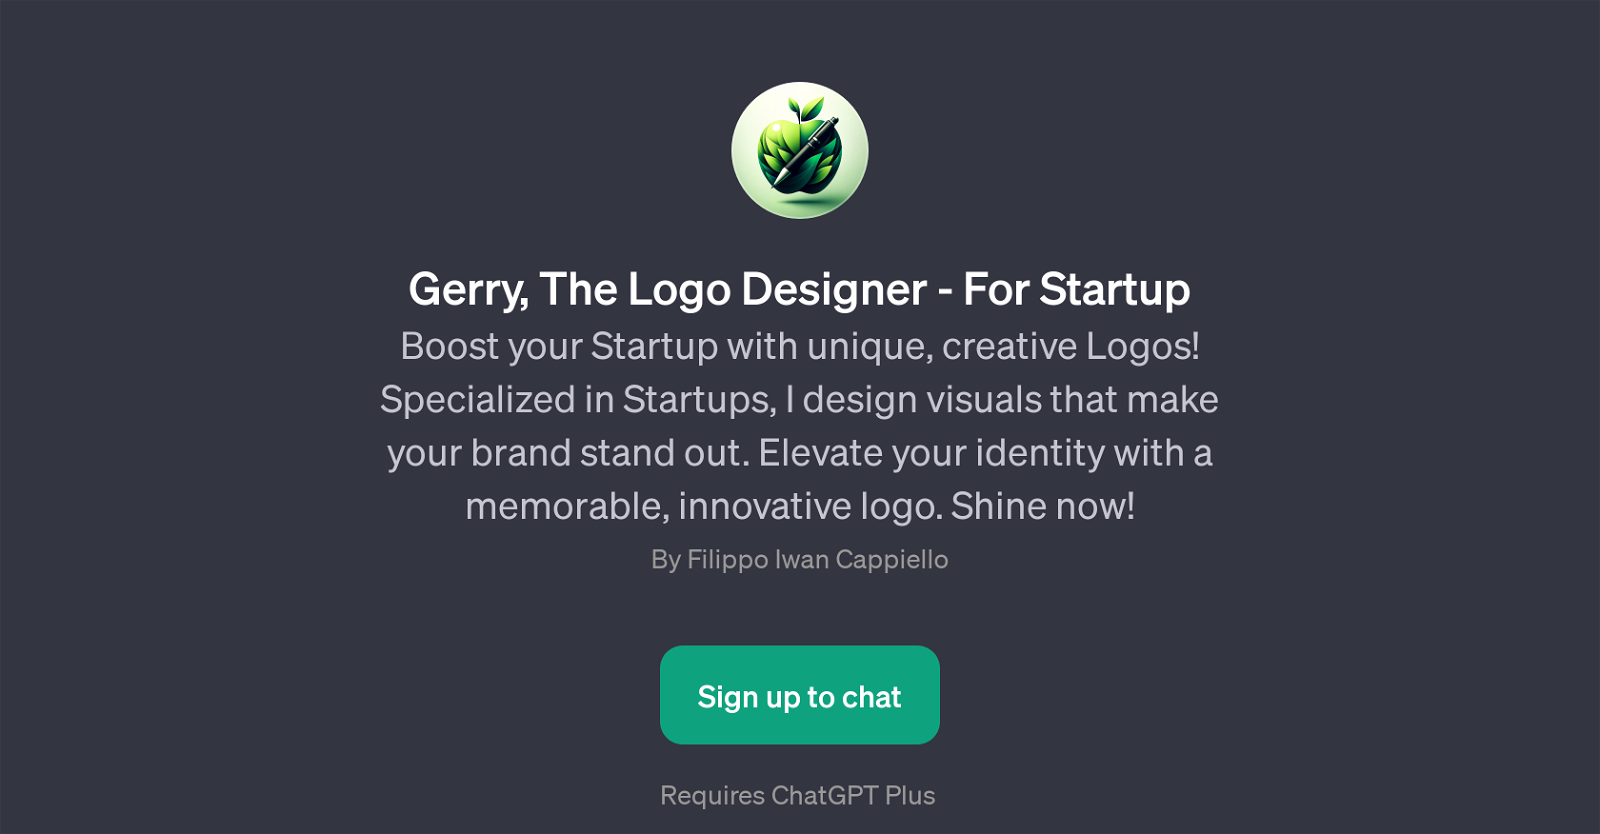 Gerry, The Logo Designer - For Startup website